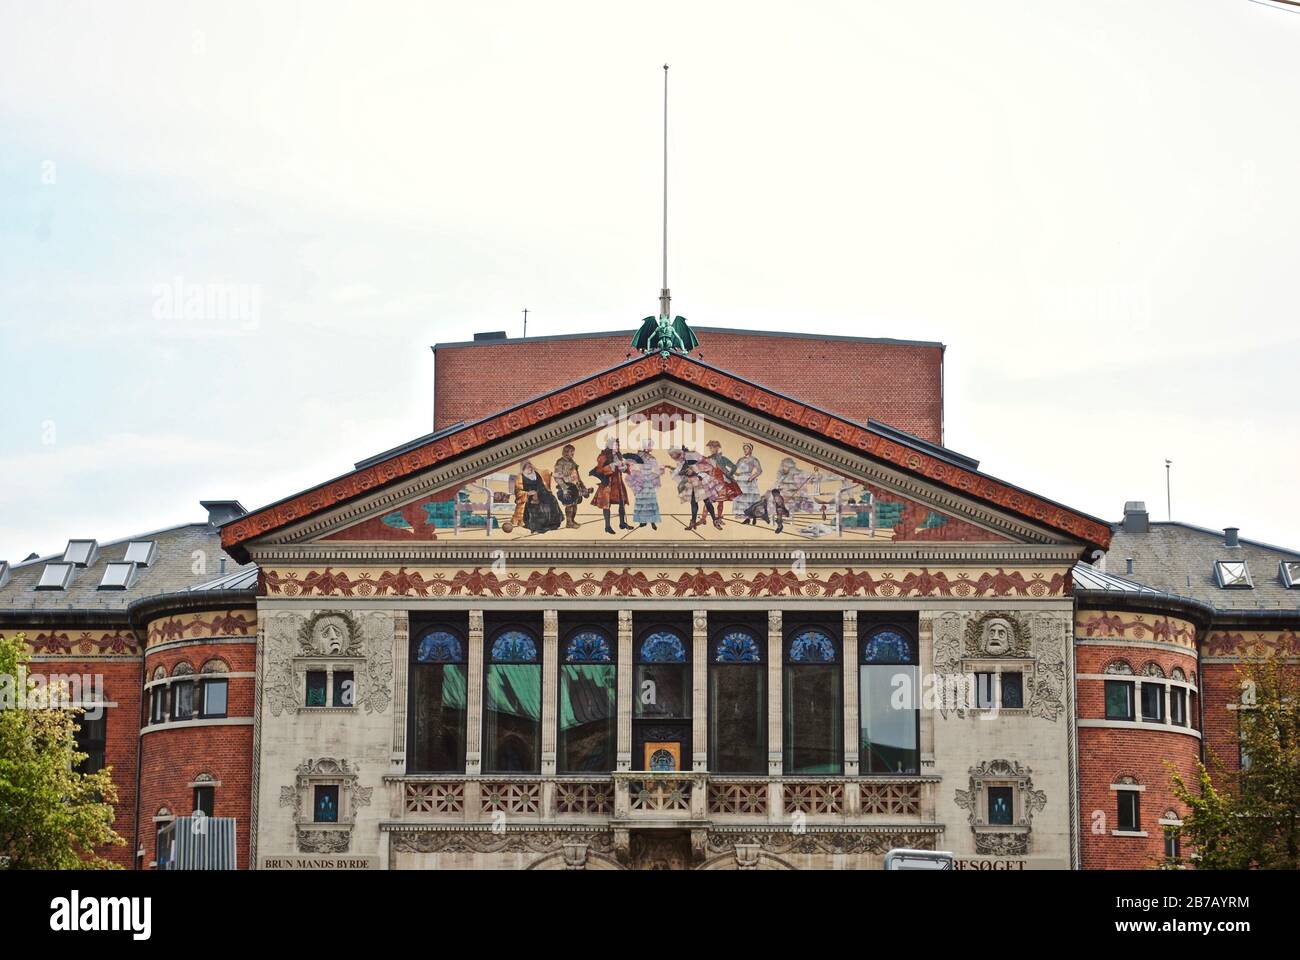 Le théâtre Aarhus (Aarhus Teater) d'Aarhus est le plus grand théâtre provincial du Danemark. Style Art nouveau, avec accent sur les matériaux naturels. Banque D'Images